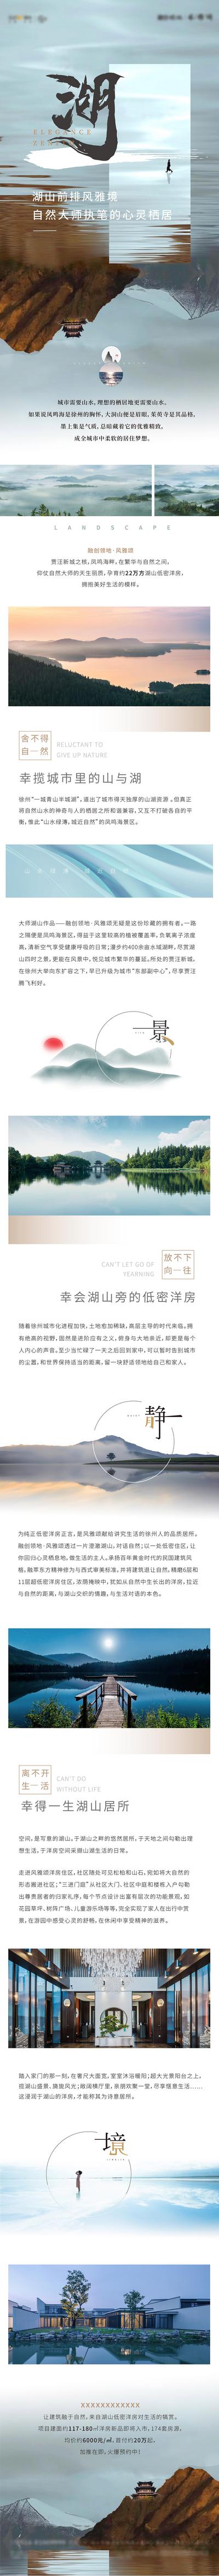 南门网 专题设计 长图 地产 新中式 湖景 山水 人文 